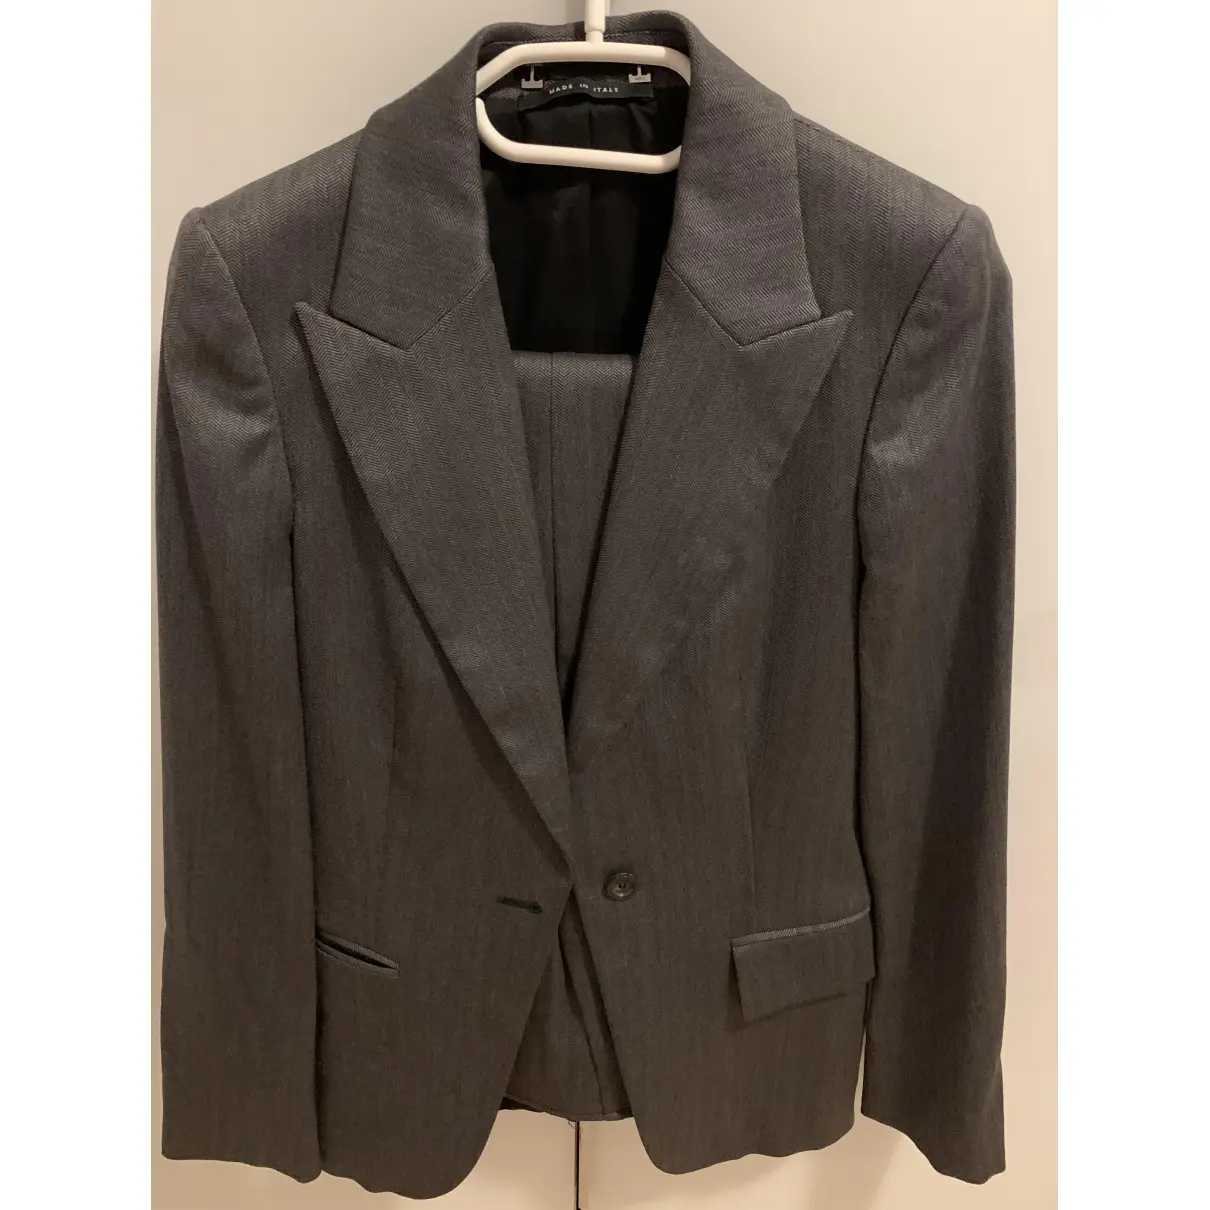 Gucci Suit jacket for sale - Vintage